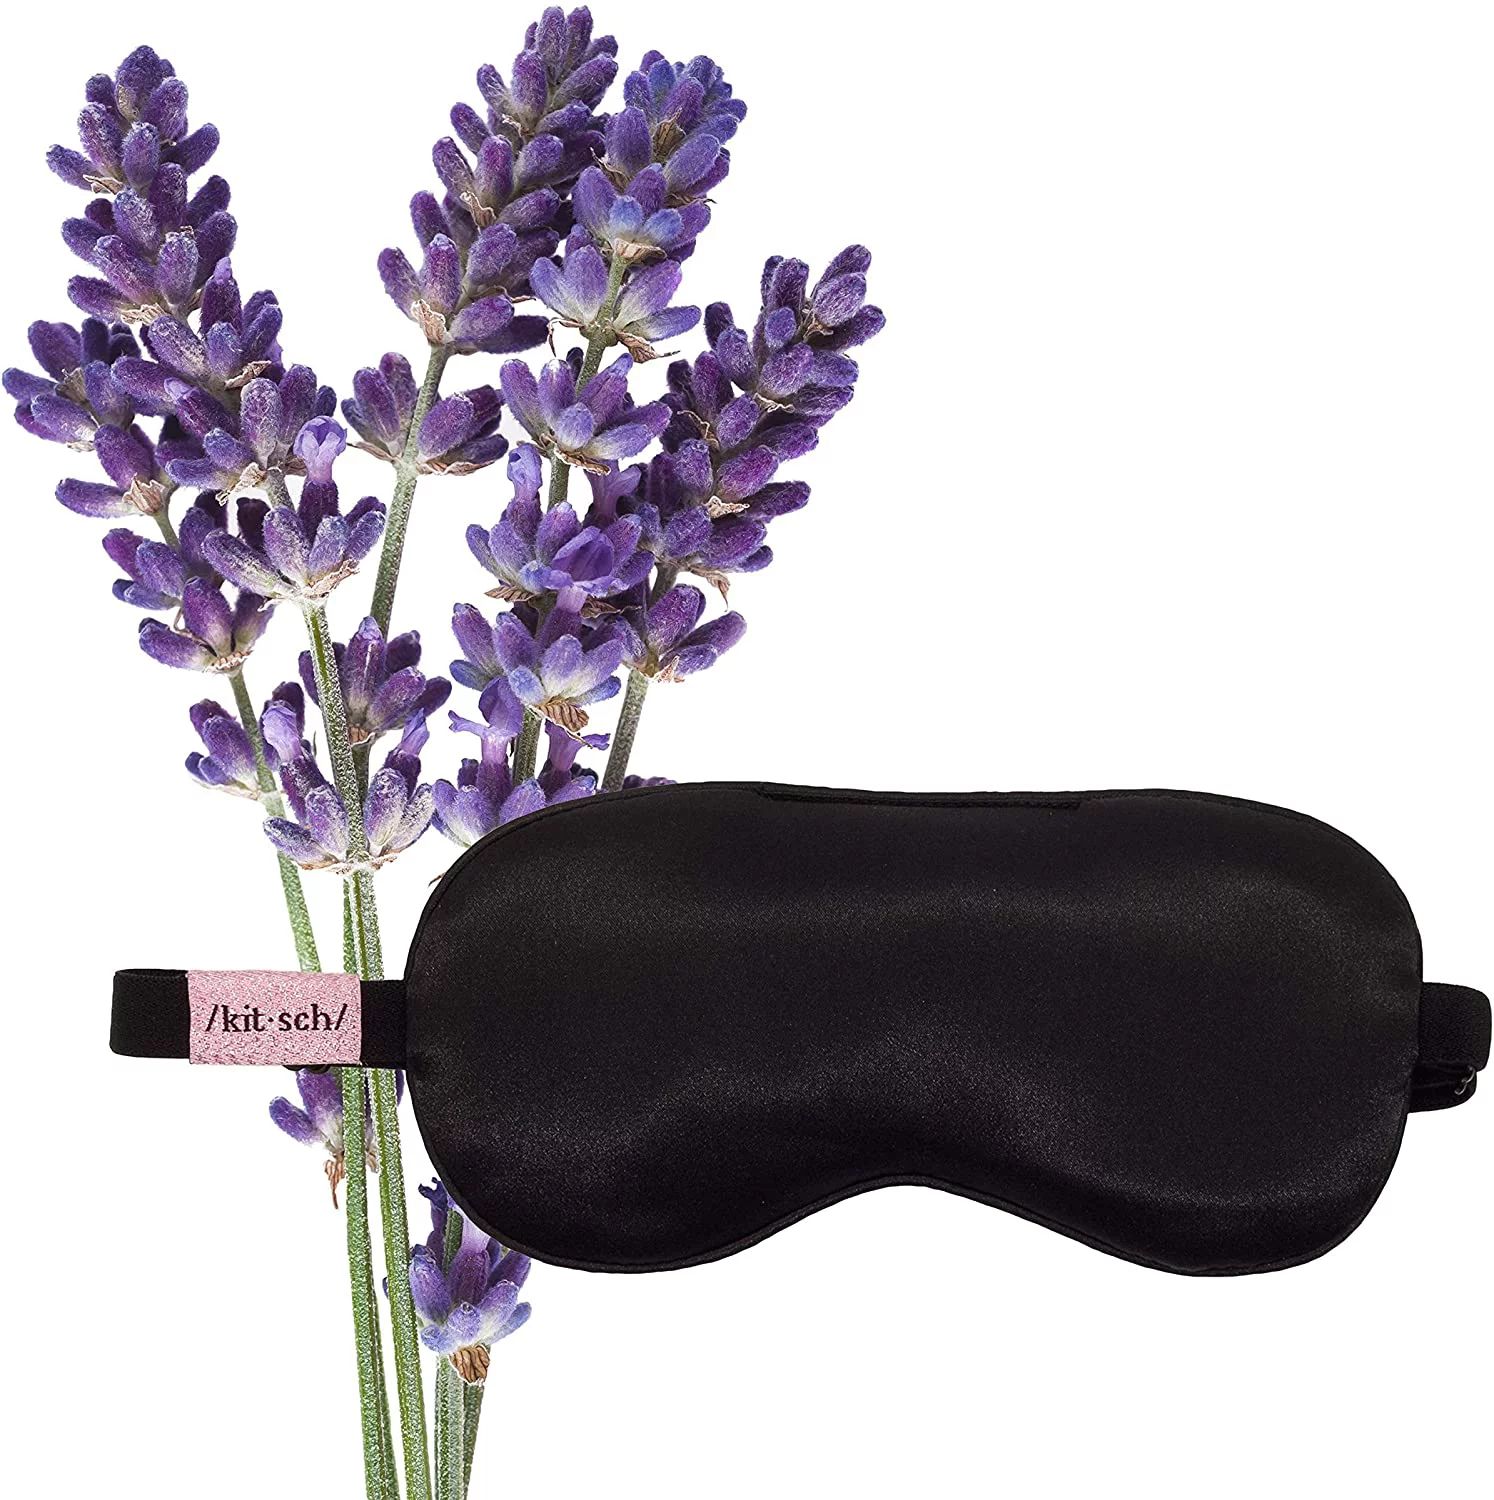 Kitsch Lavender Weighted Satin Eye Mask - Gentle Massage Effect - (Black) | Walmart (US)